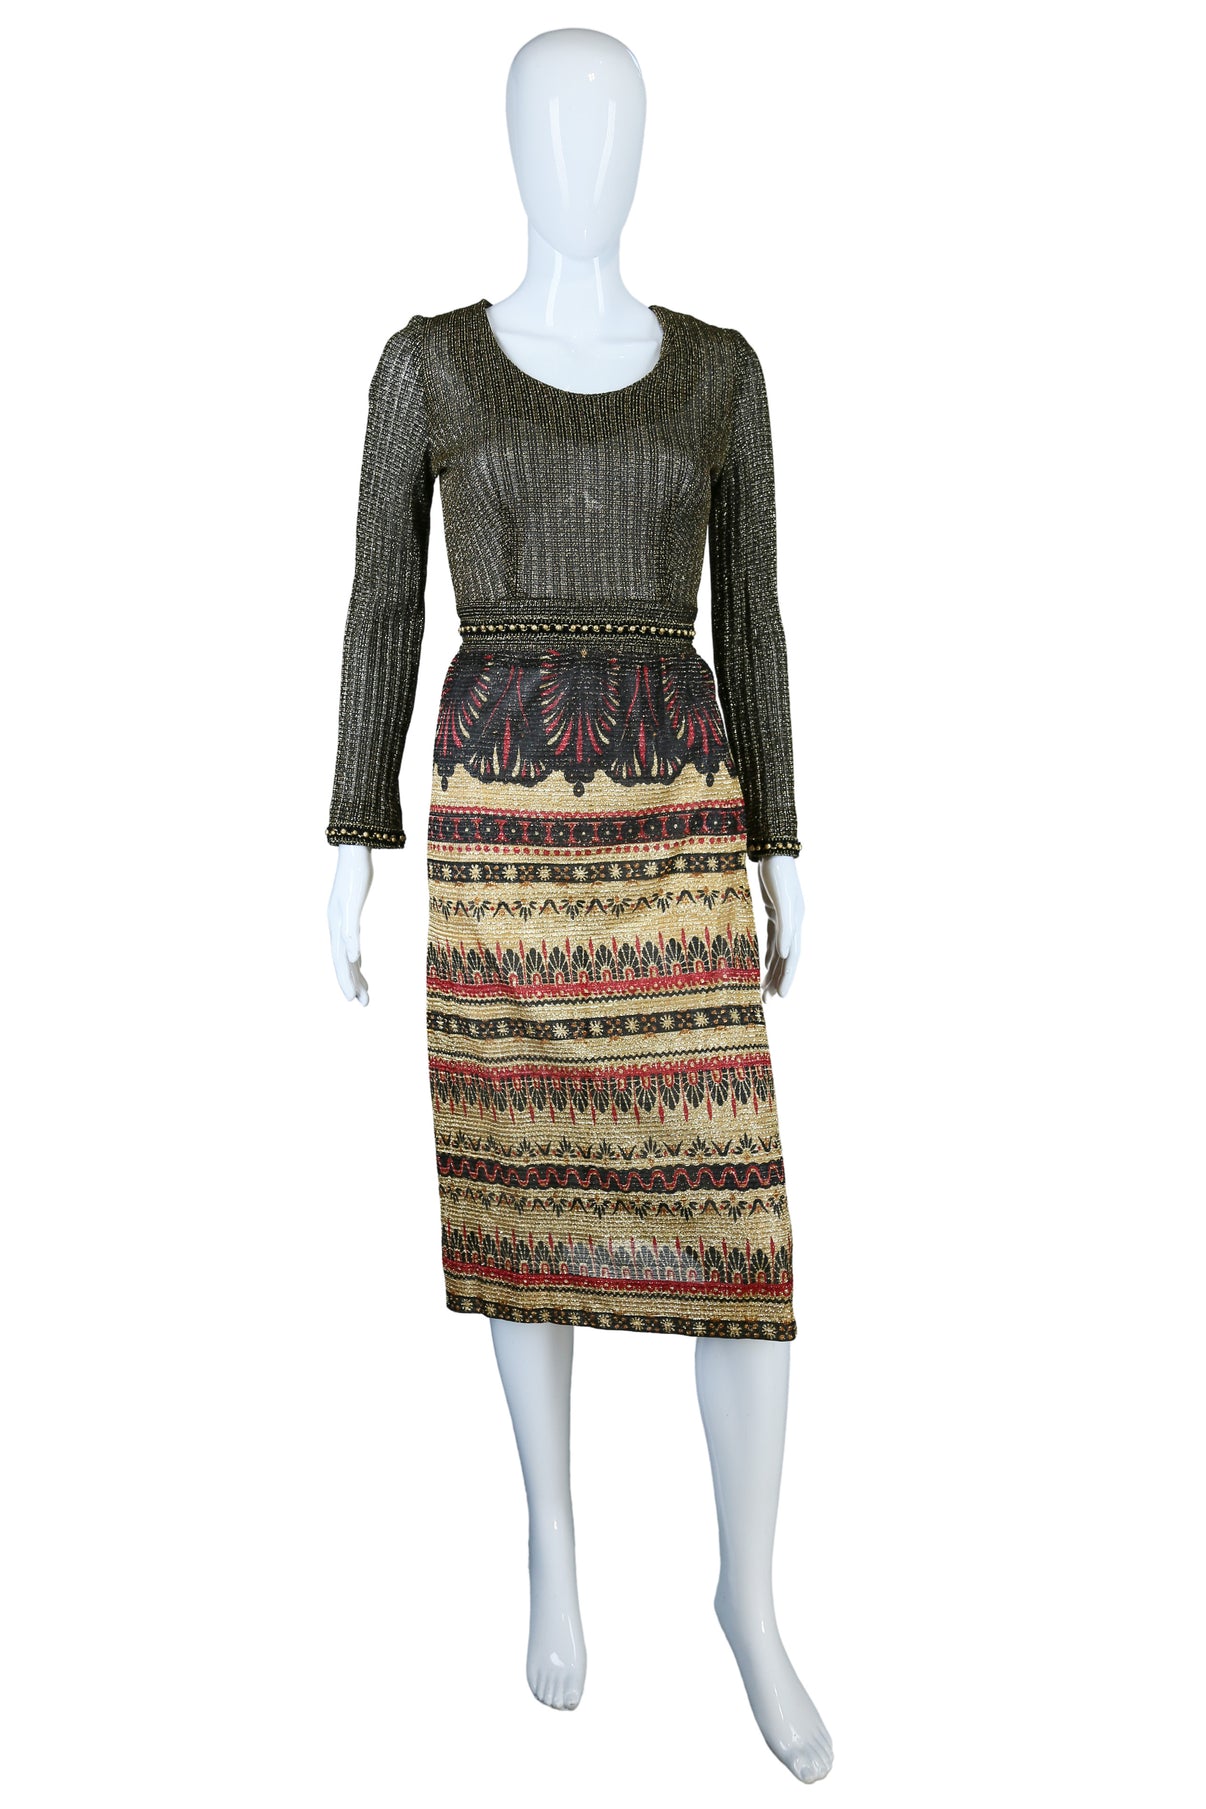 Lurex + Egyptian Revival Motif Print Dress – Embers / Cinders Vintage